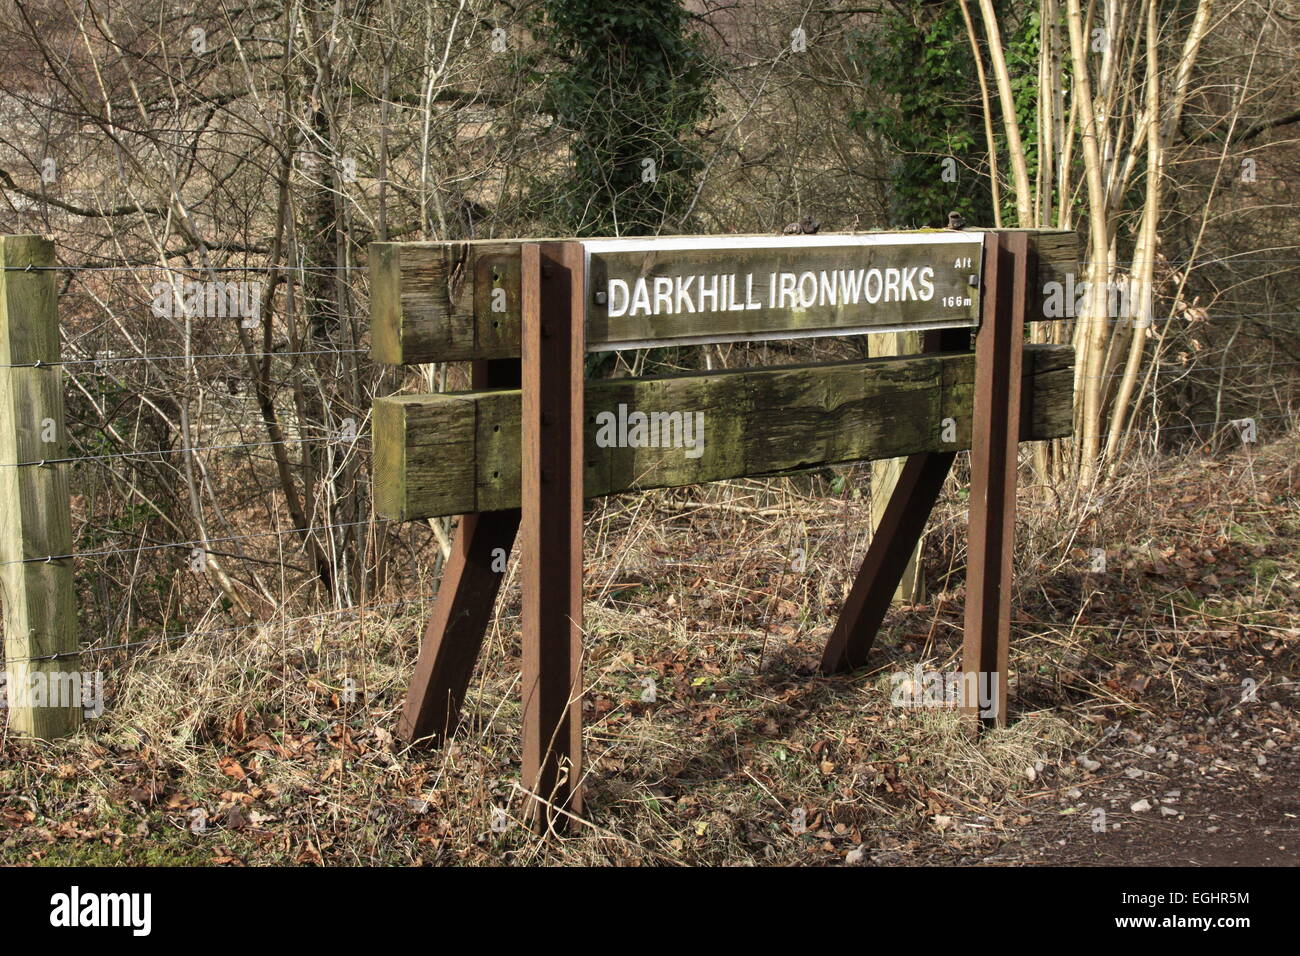 Darkhill Ironworks railway sign, Stock Photo